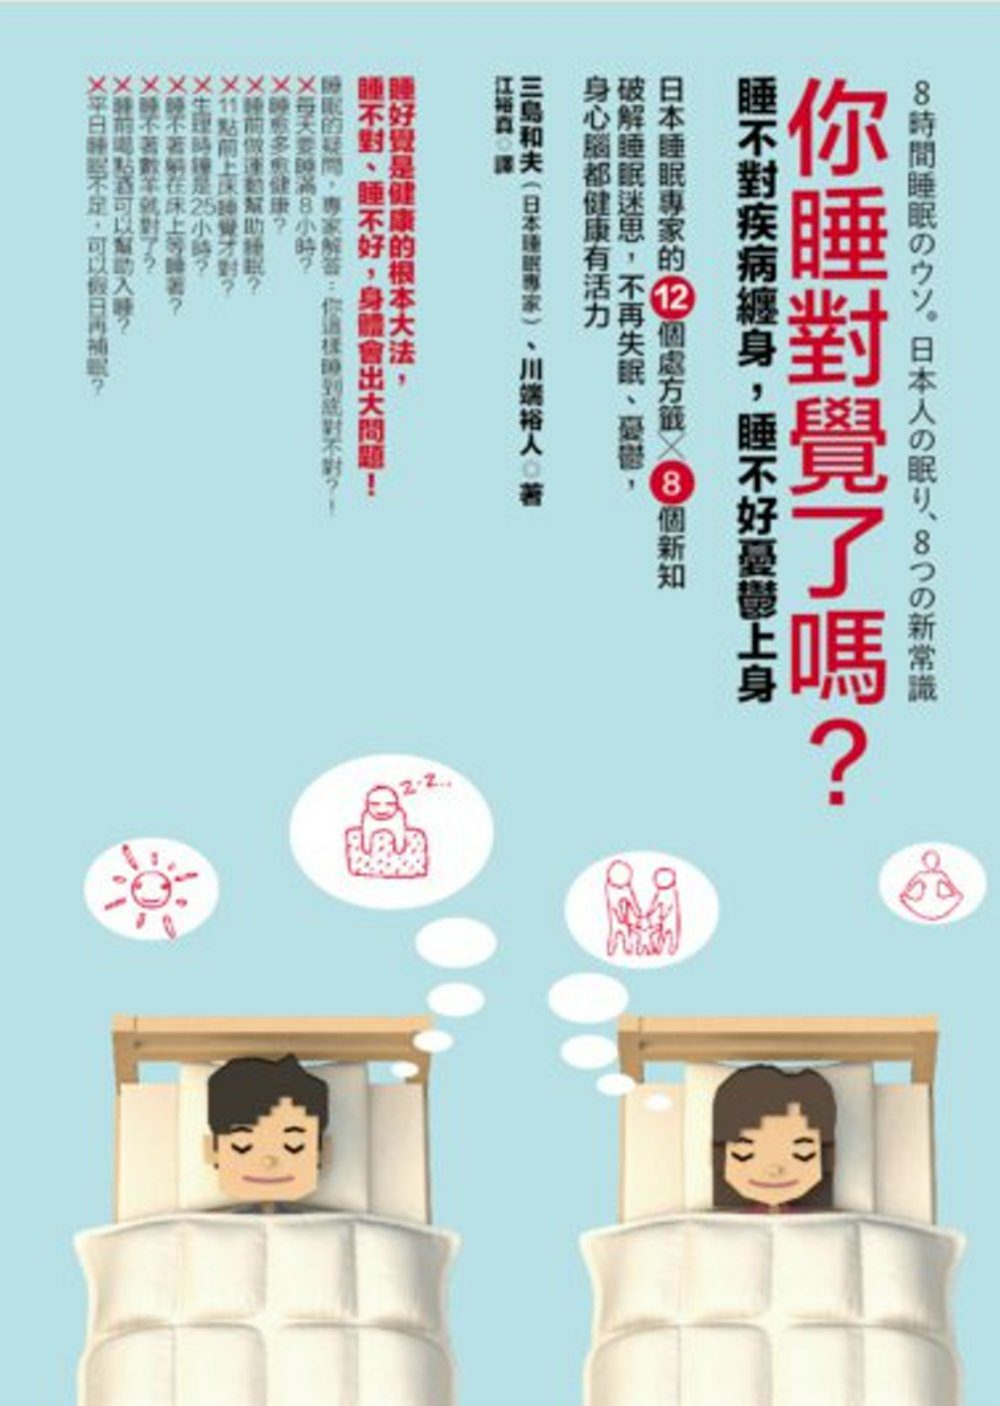 你睡對覺了嗎?：睡不對疾病纏身，睡不好憂鬱上身。日本睡眠專家的12個處方籤╳8個新知，破解睡眠迷思，不再失眠、憂鬱，身心腦都健康有活力